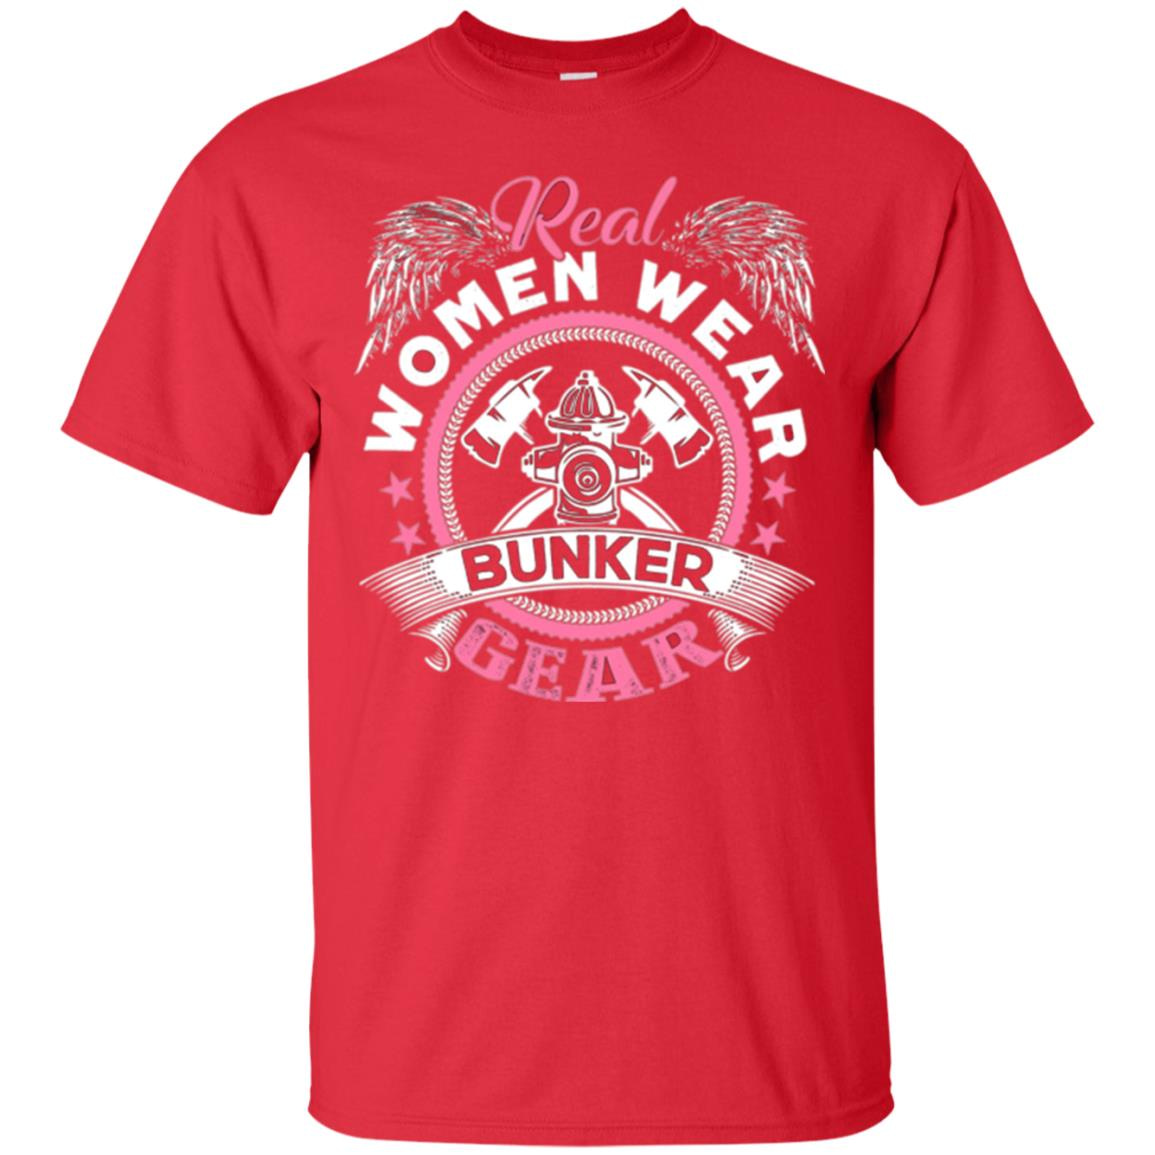 Inktee Store - Firefighter Women Wear Bunker Gear Men’s T-Shirt Image